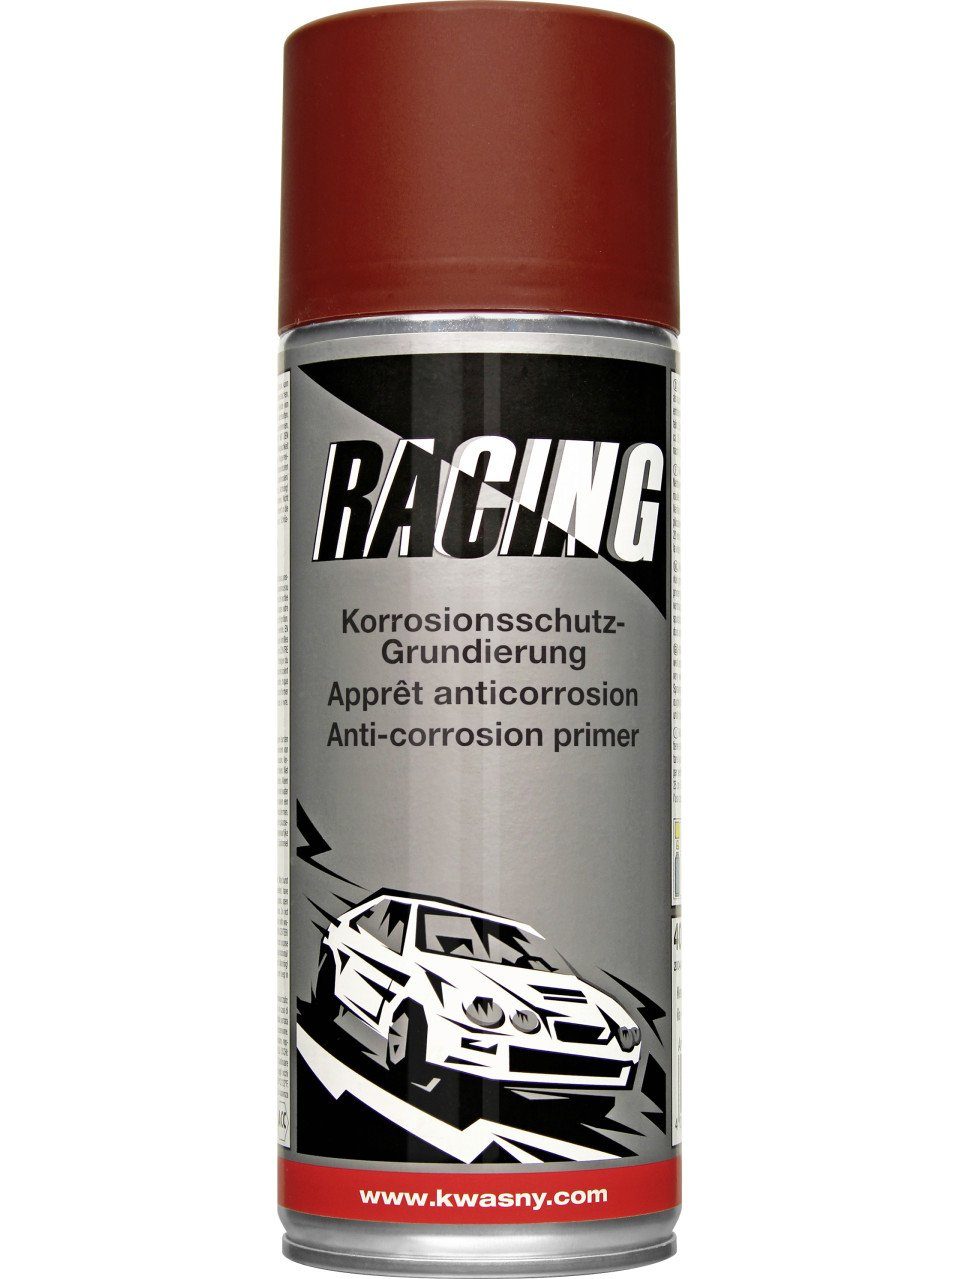 Auto-K Sprühlack Auto-K Racing Korrosionsschutz-Grundierung